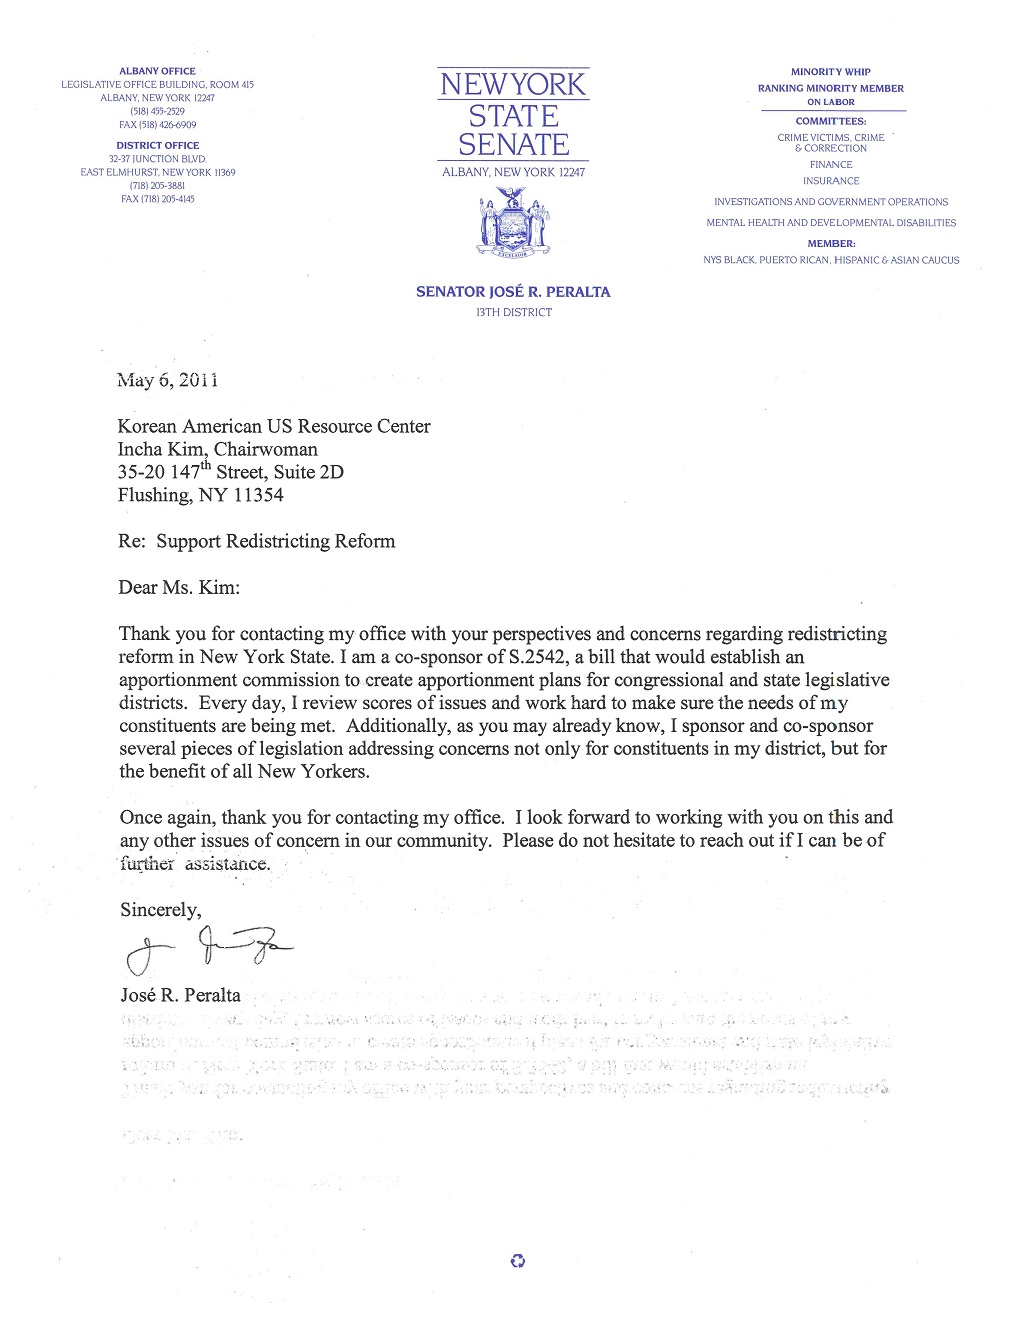 뉴욕주 선거구 재조정 관련 뉴욕주 상원의원 호세 페랄타 편지